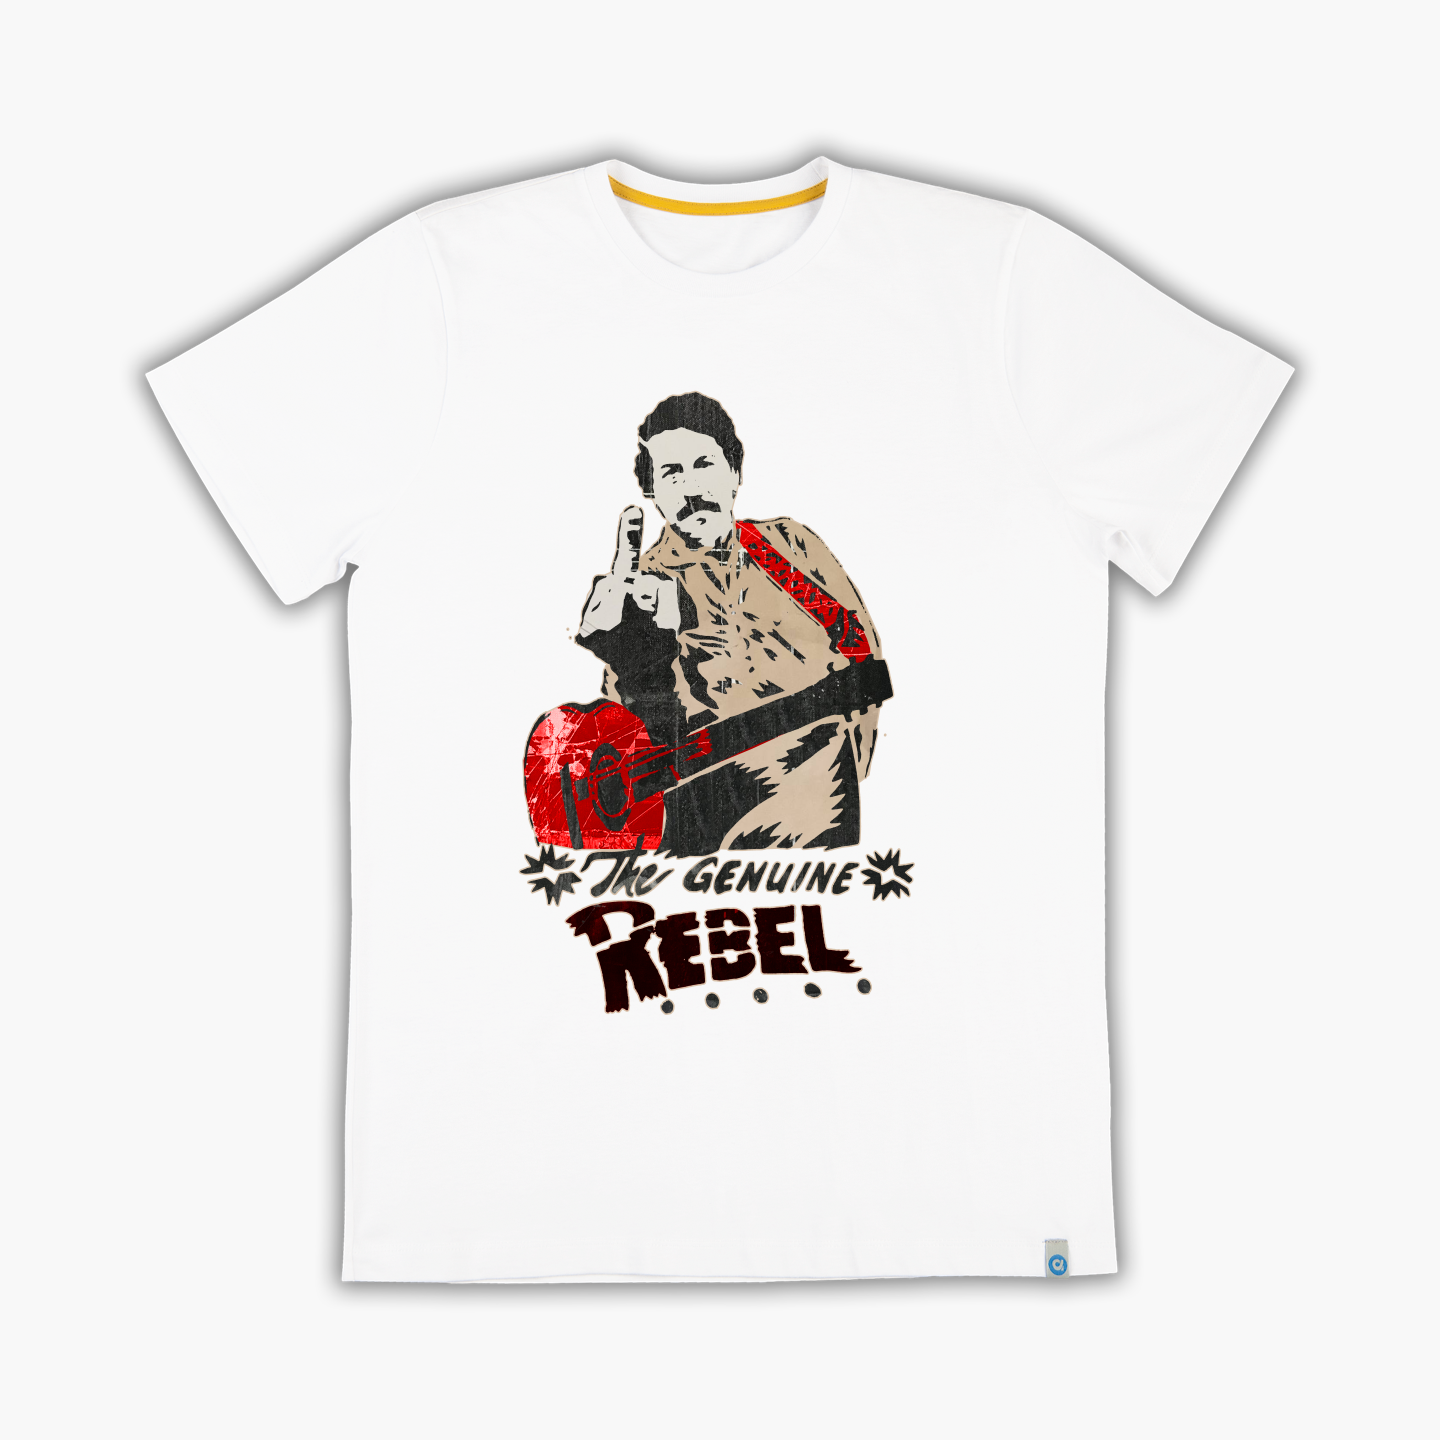 Fockin Genuine Rebel - Tişört